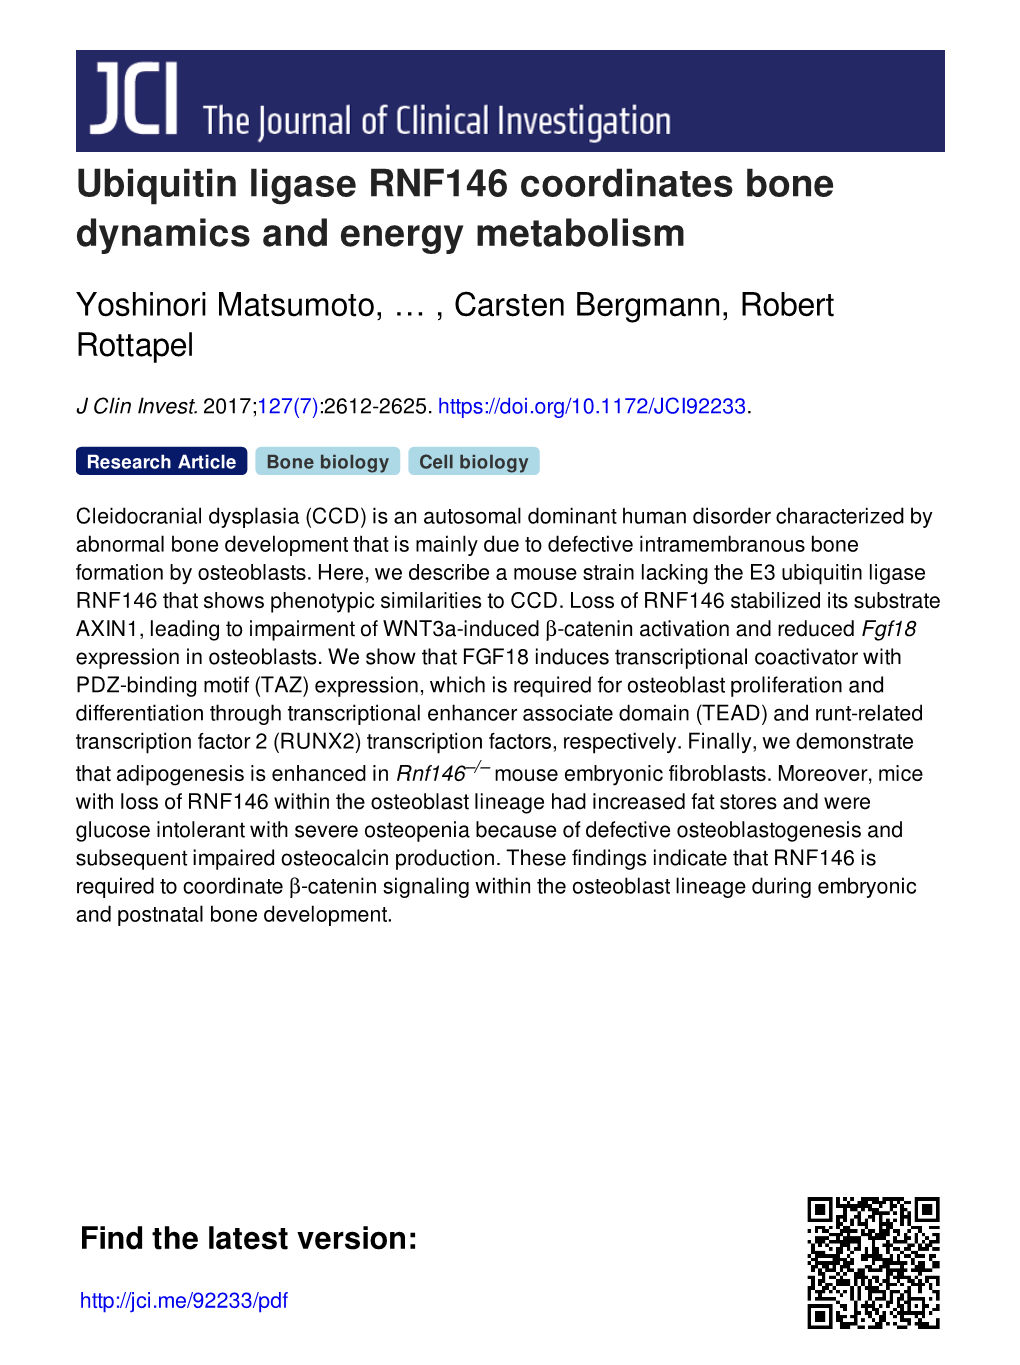 Ubiquitin Ligase RNF146 Coordinates Bone Dynamics and Energy Metabolism